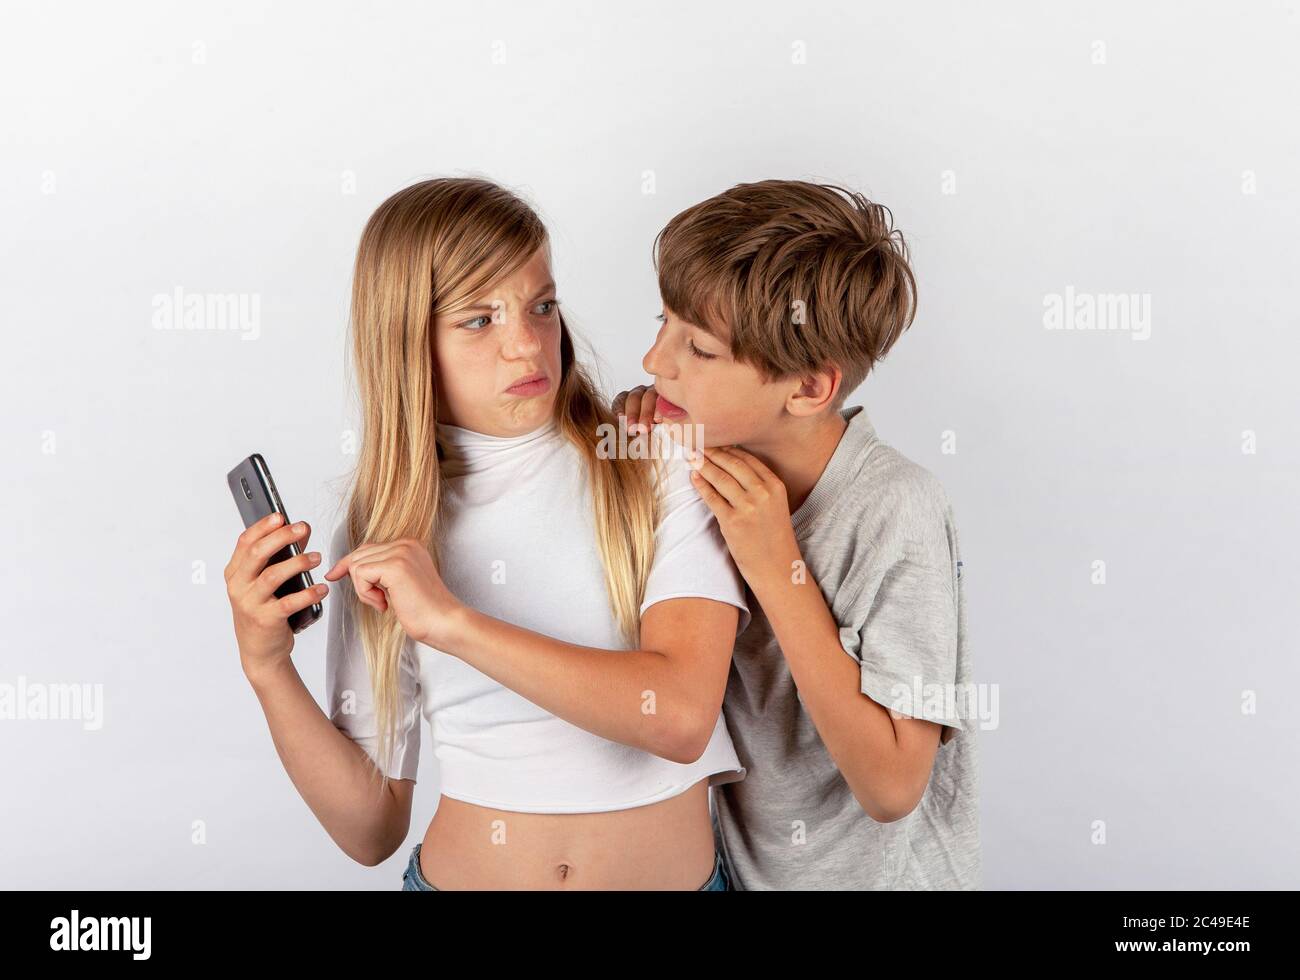 Junge versucht, ein Mädchen Handy beobachten von ihrer Schulter aus, aber das Mädchen bemerkte es und wurde sehr wütend Stockfoto